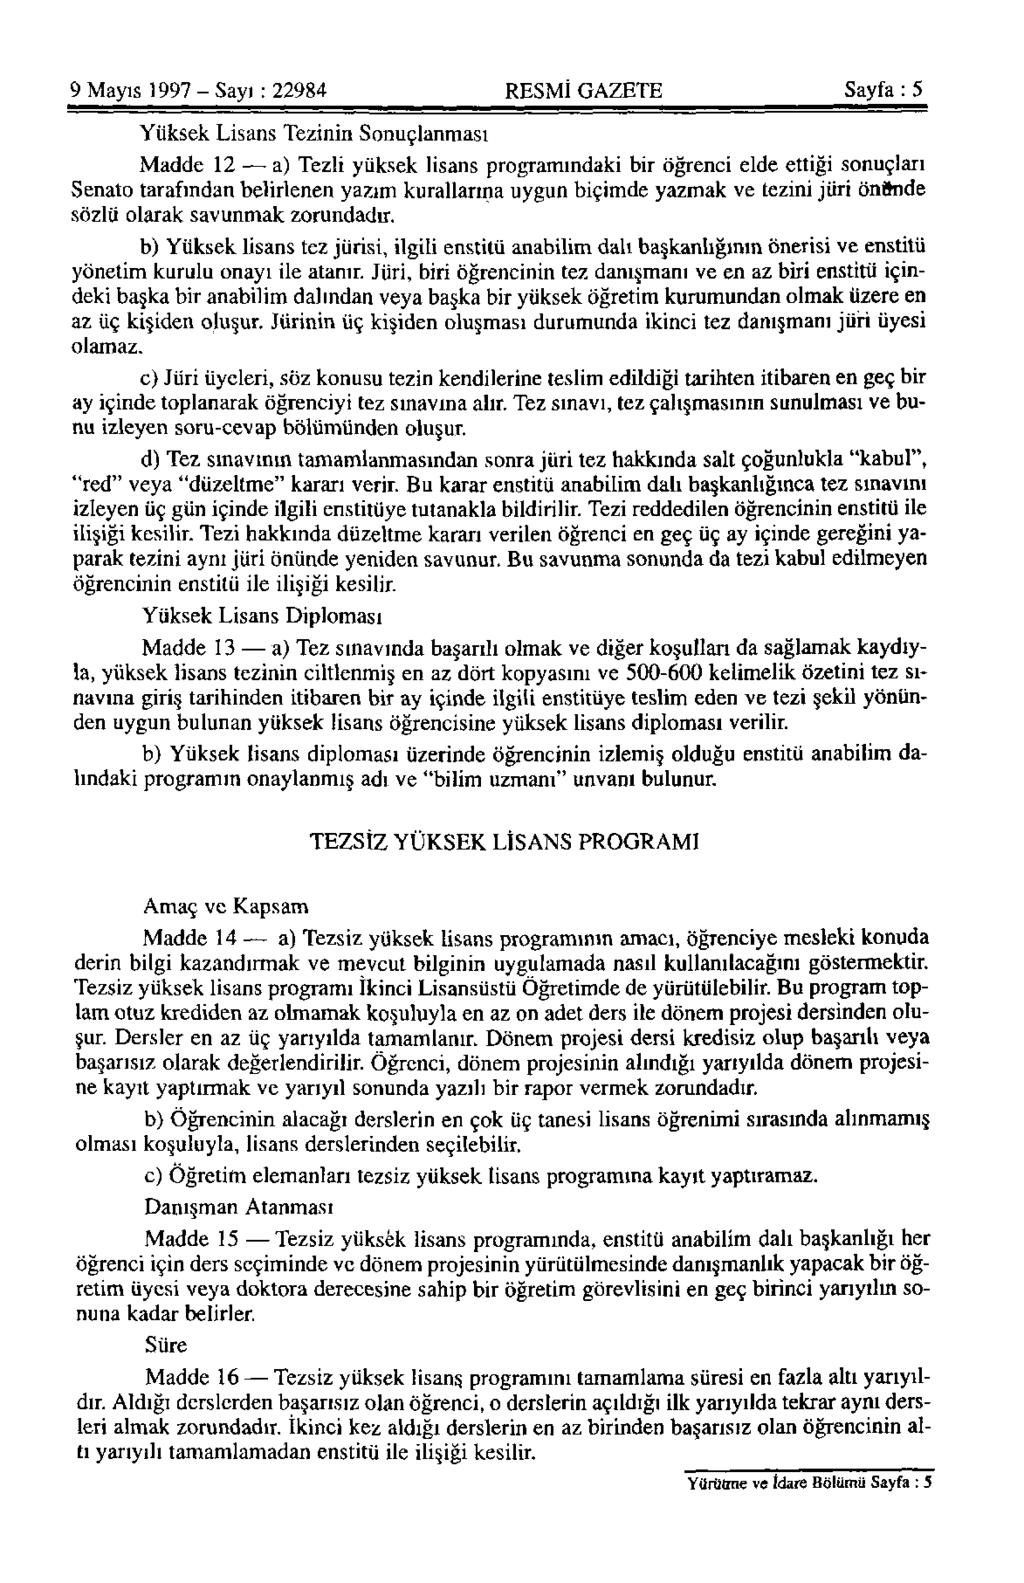 9 Mayıs 1997 - Sayı: 22984 RESMİ GAZETE Sayfa: 5 Yüksek Lisans Tezinin Sonuçlanması Madde 12 a) Tezli yüksek lisans programındaki bir öğrenci elde ettiği sonuçları Senato tarafından belirlenen yazım